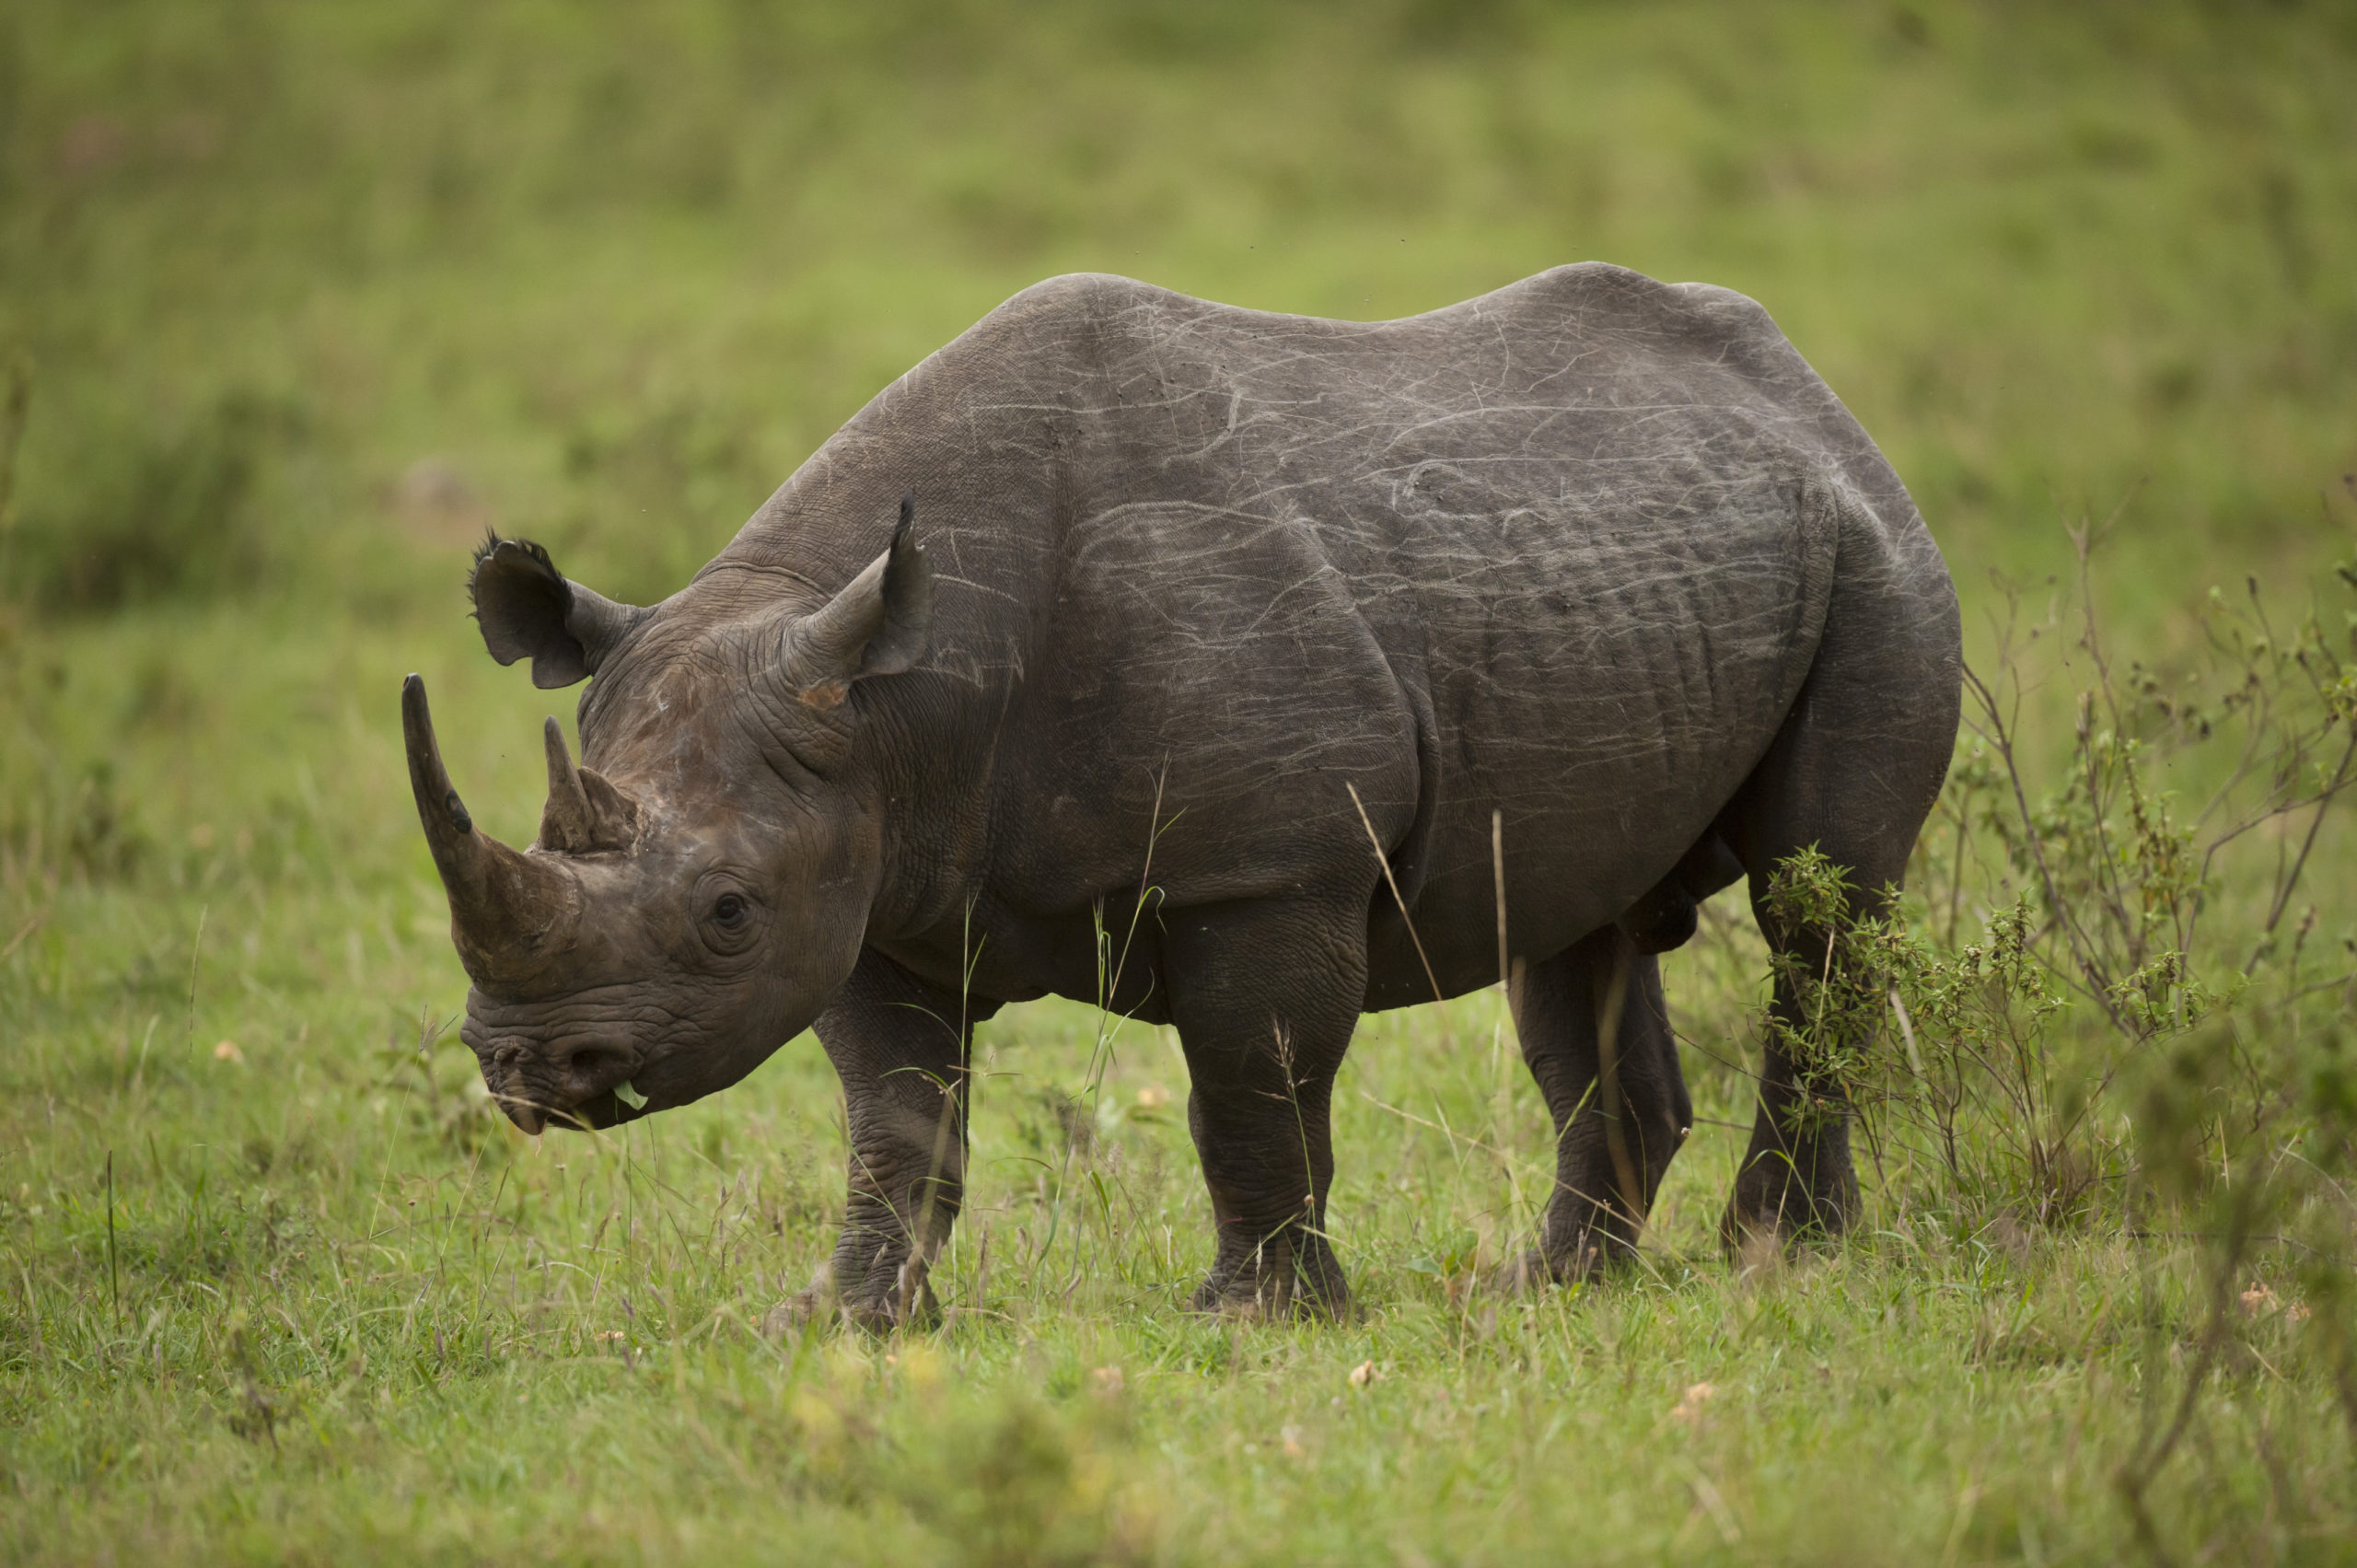 Apprenez à propos des Big Five à un groupe de grands animaux emblématiques les plus recherchés par les touristes en Afrique.